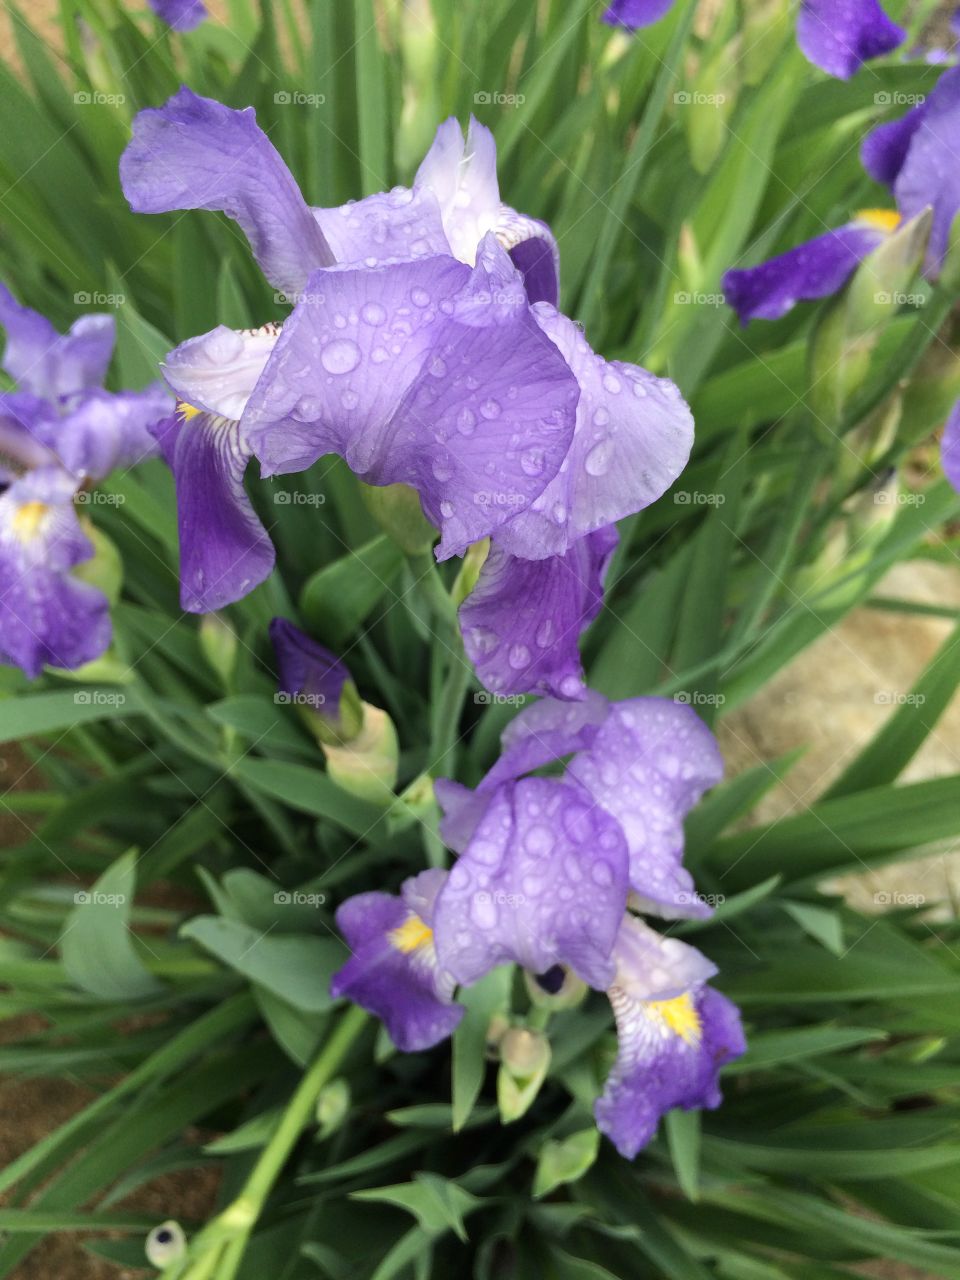 Wild irises 